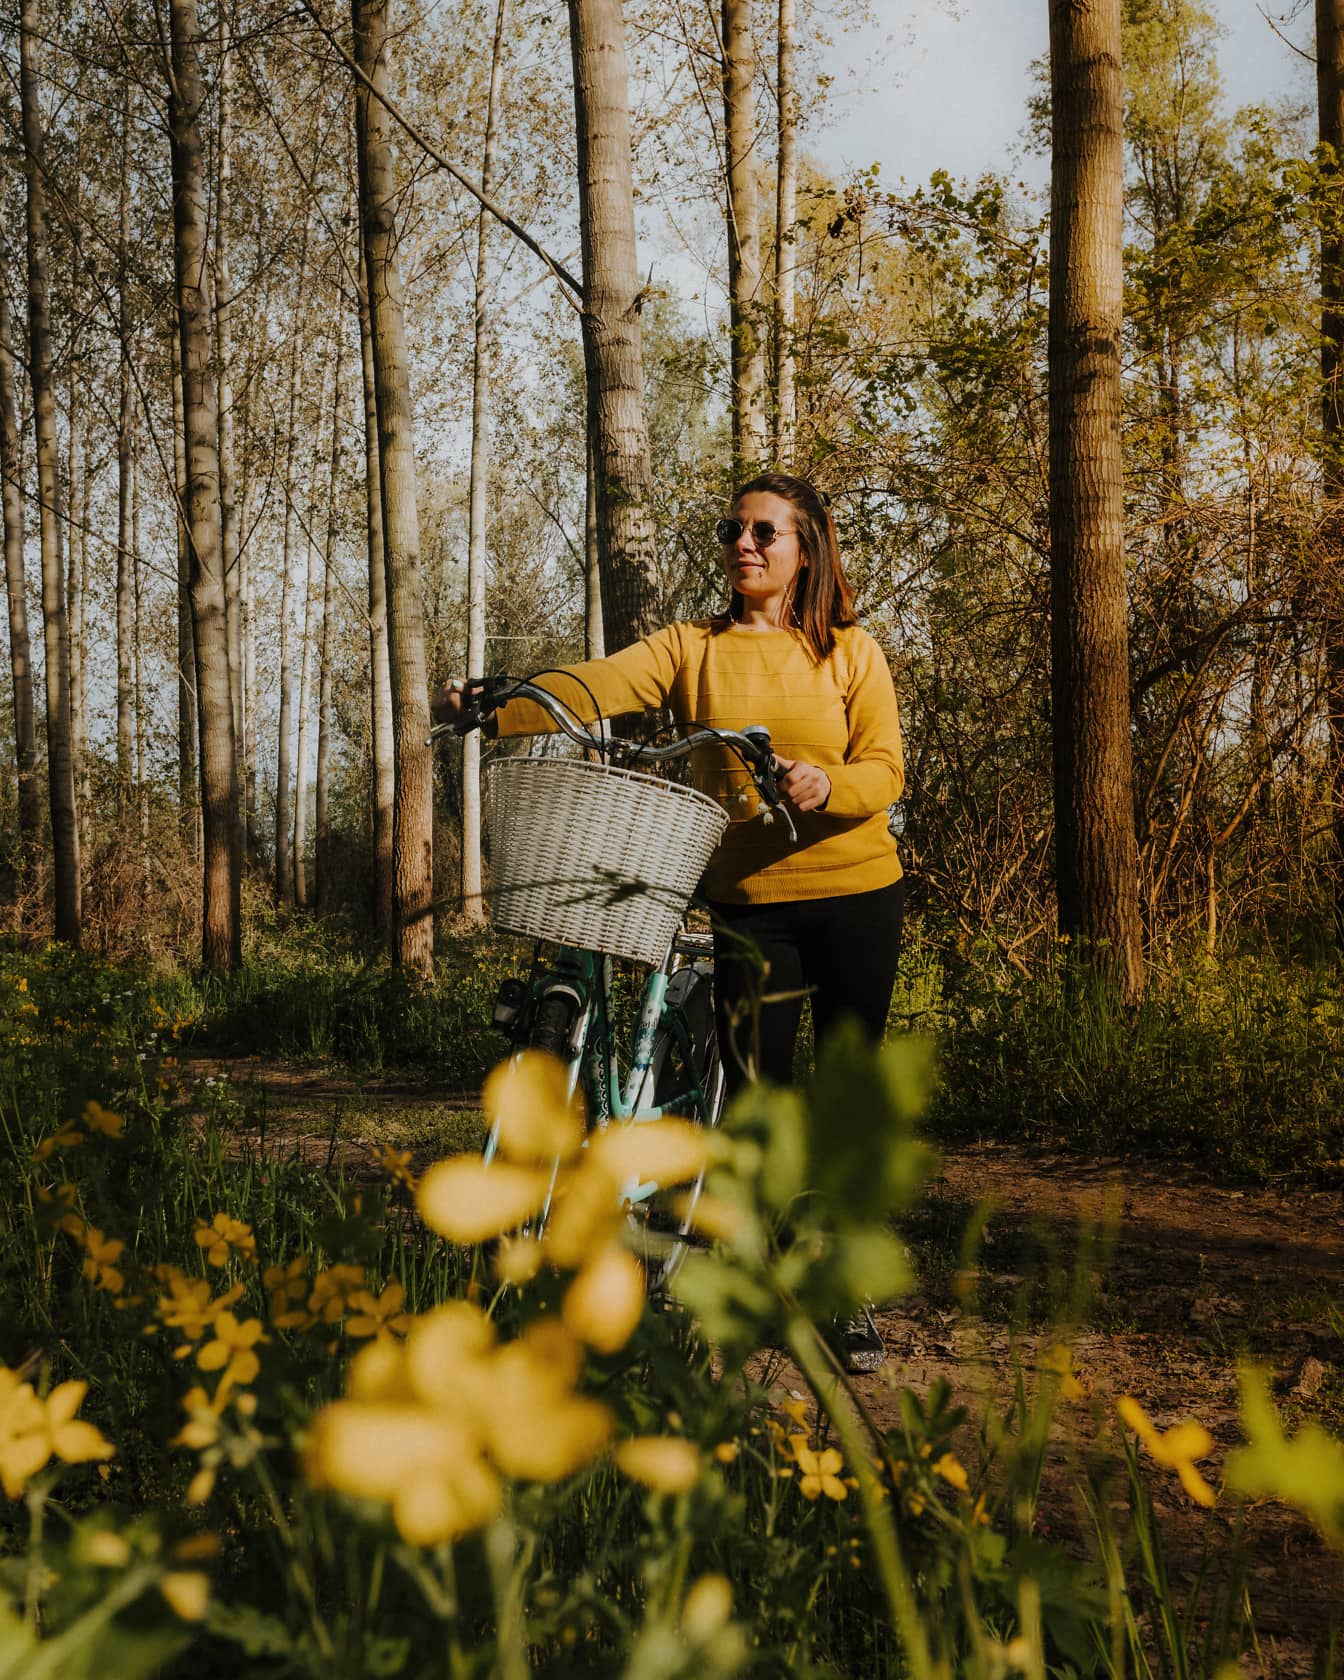 晴れた春の日、森の中を自転車で林道を歩く元気な女性